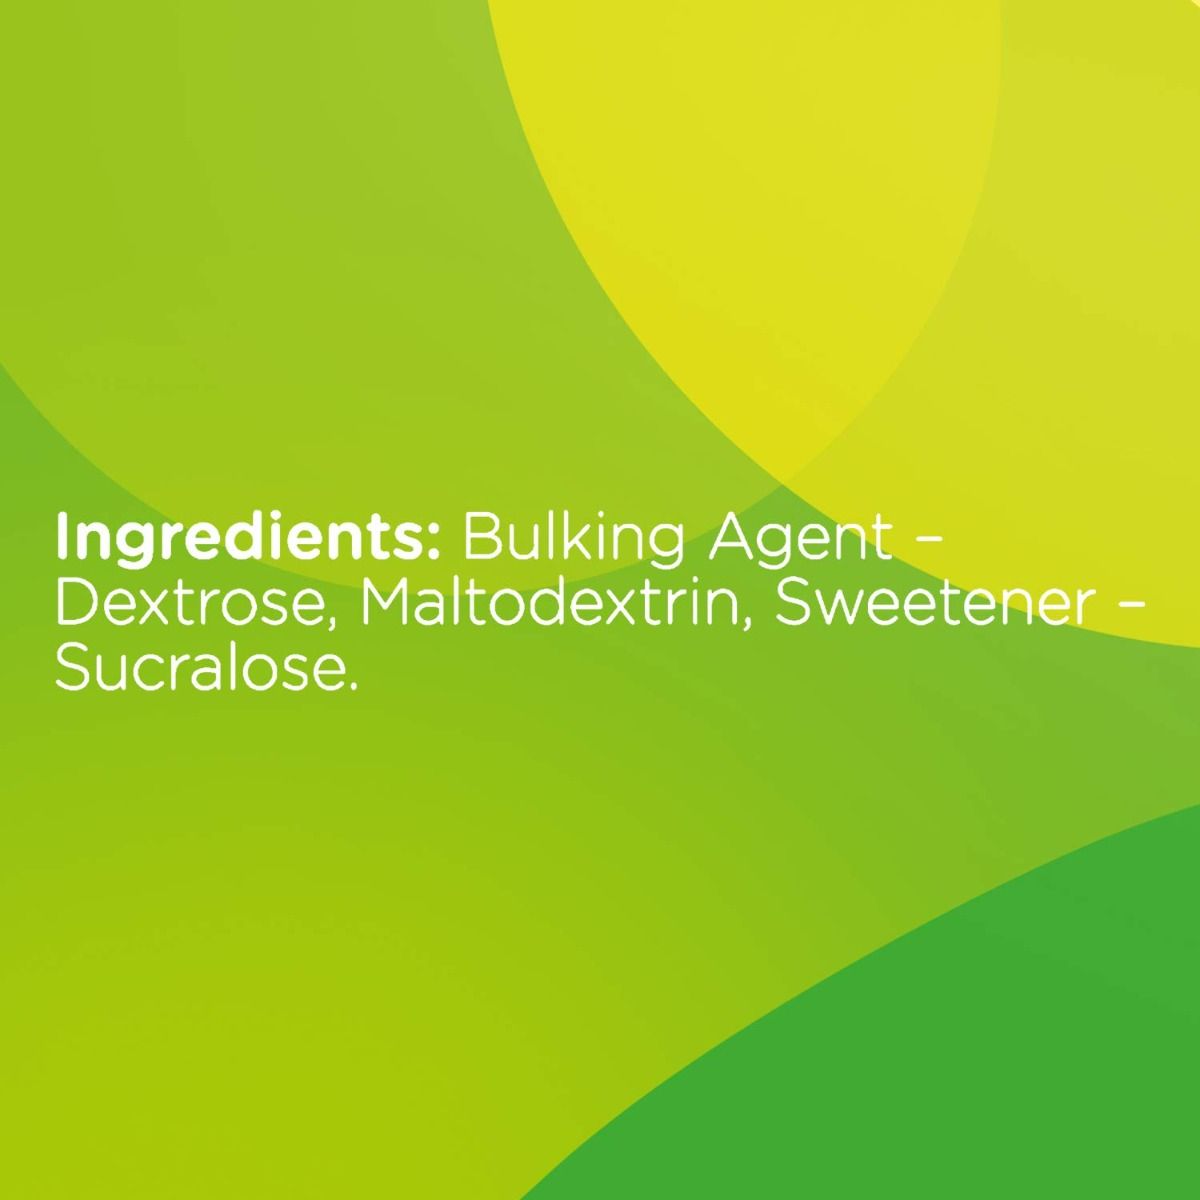 Sugar Free Natura Low Calorie Sweetener Powder, 100 gm, Pack of 1 